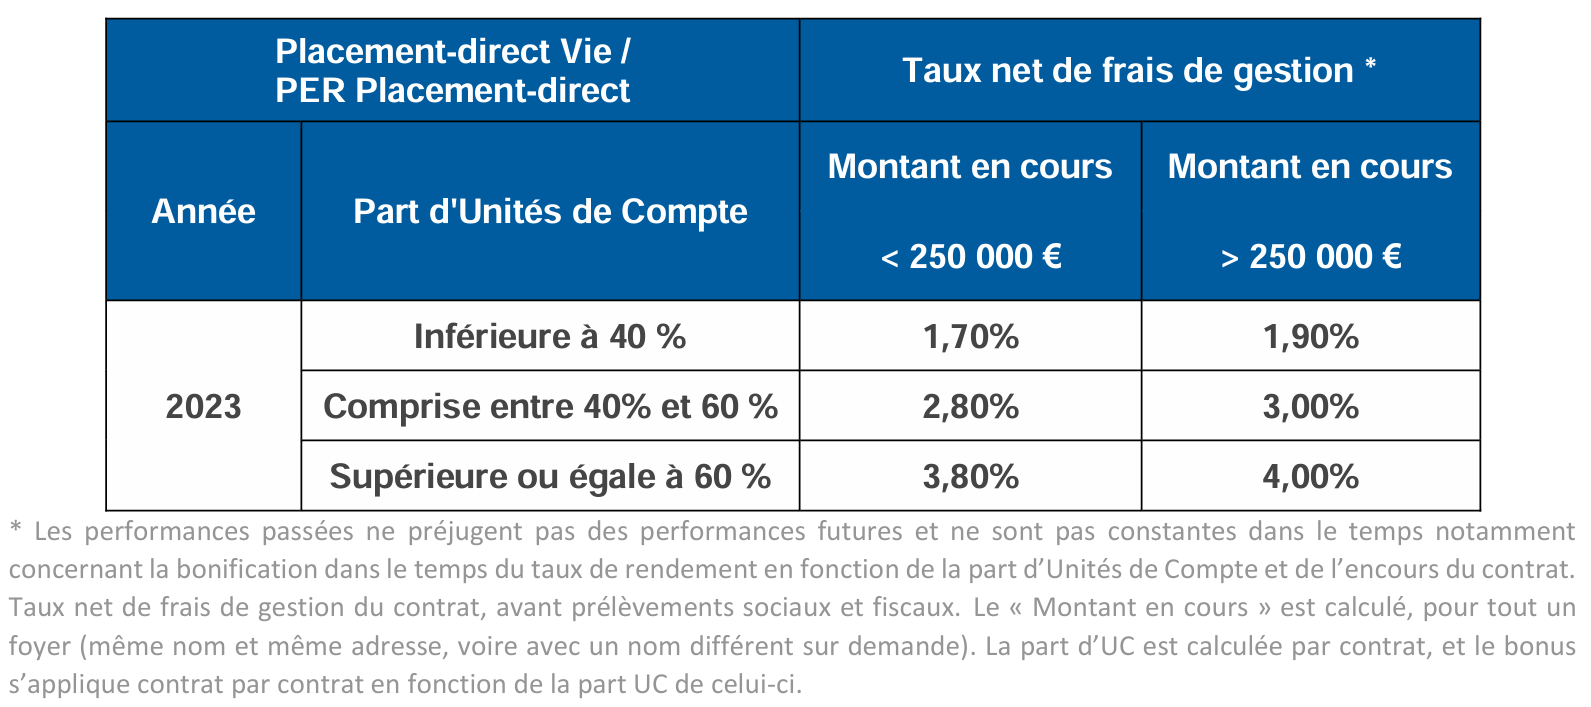 Les performances de Placement-direct Vie sur l'année 2023 selon les parts d'unités de compte et le montant du contrat.